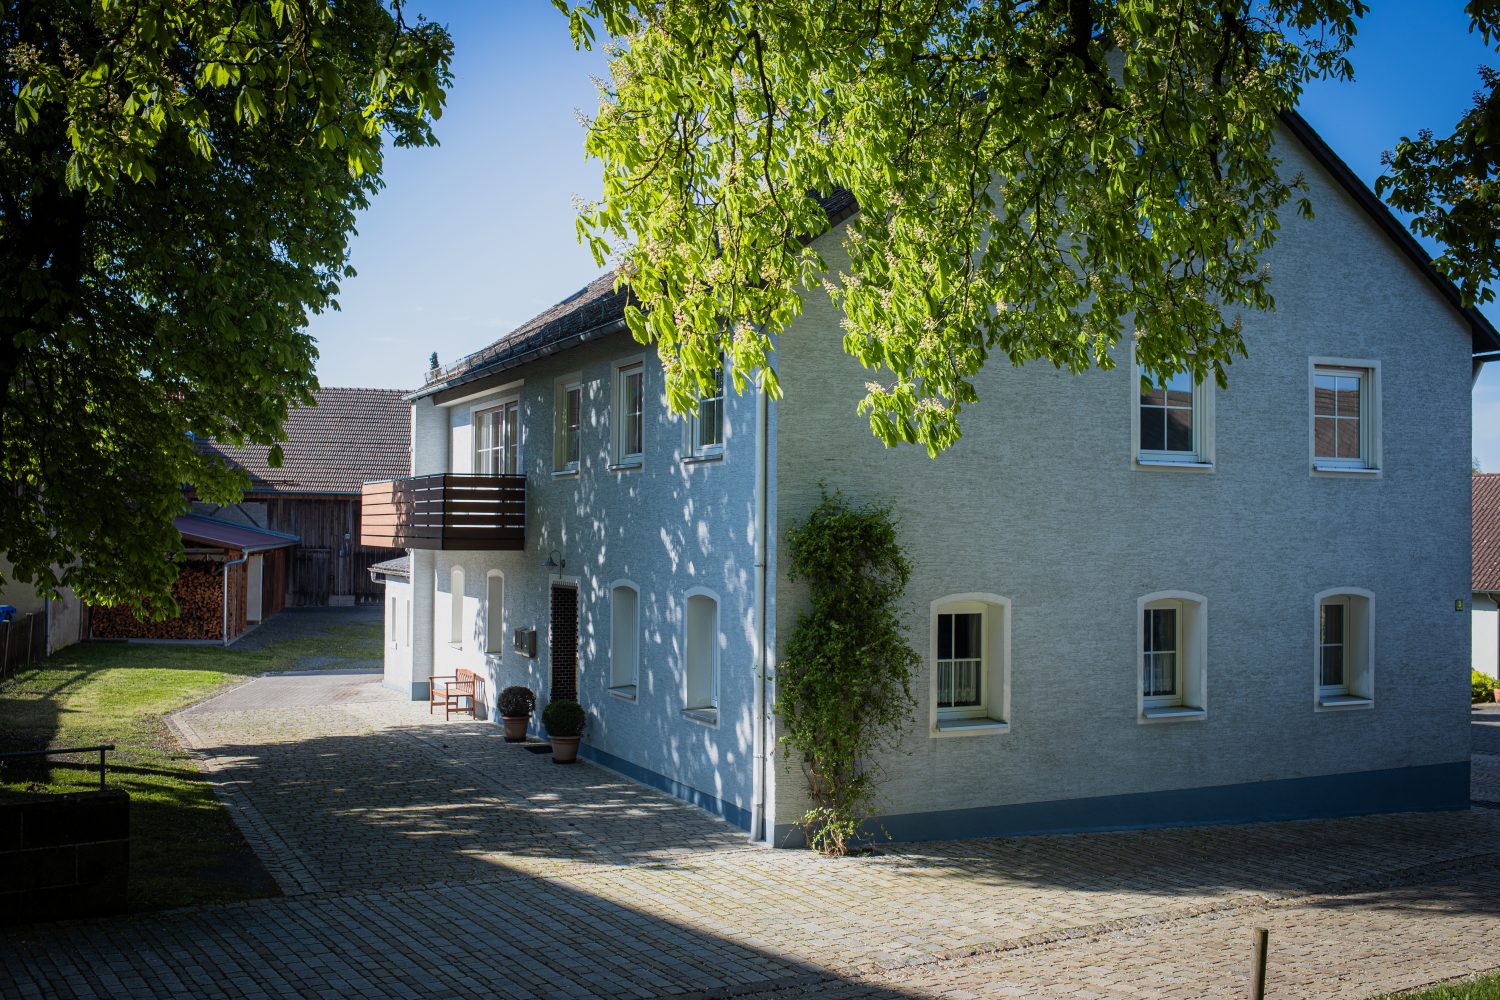 Immobilienverkauf: Historisches Mehrfamilienhaus mit Ausbaupotenzial in Speichersdorf